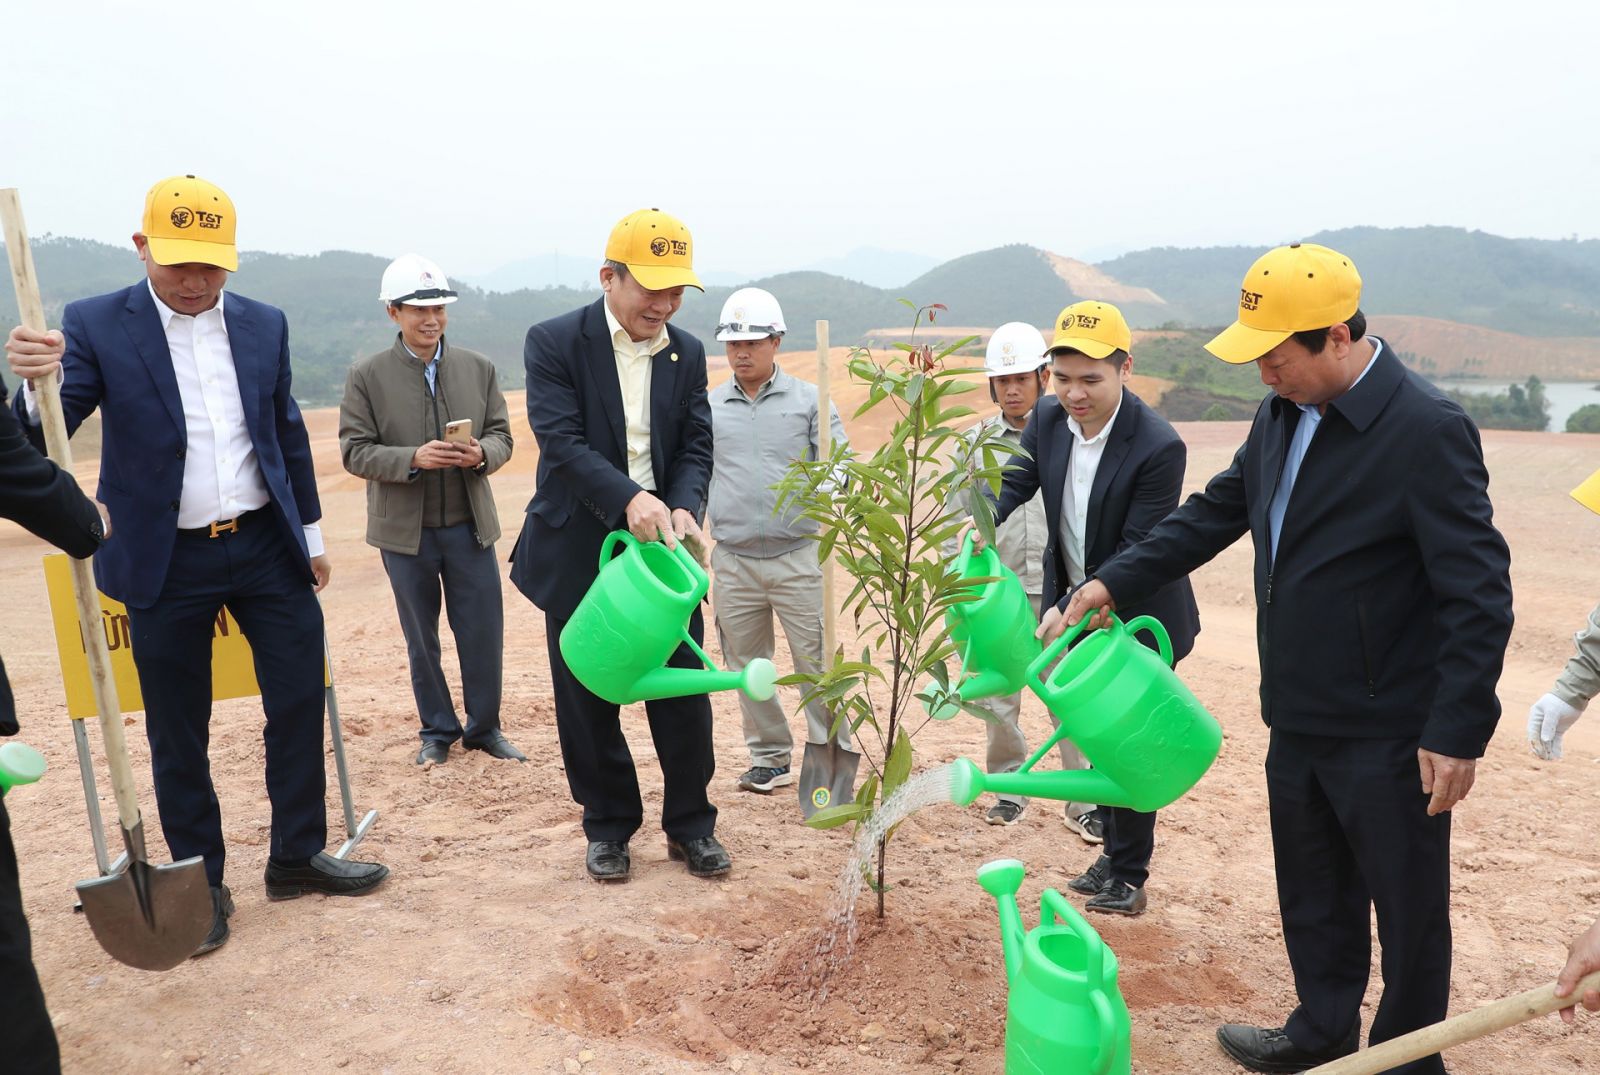 Ông Bùi Văn Quang, Phó bí thư tỉnh ủy, Chủ tịch UBND tỉnh Phú Thọ và ông Đỗ Quang Hiển, Chủ tịch Ủy ban Chiến lược Tập đoàn T&T Group cùng các đại biểu tham gia trồng cây tại dự án